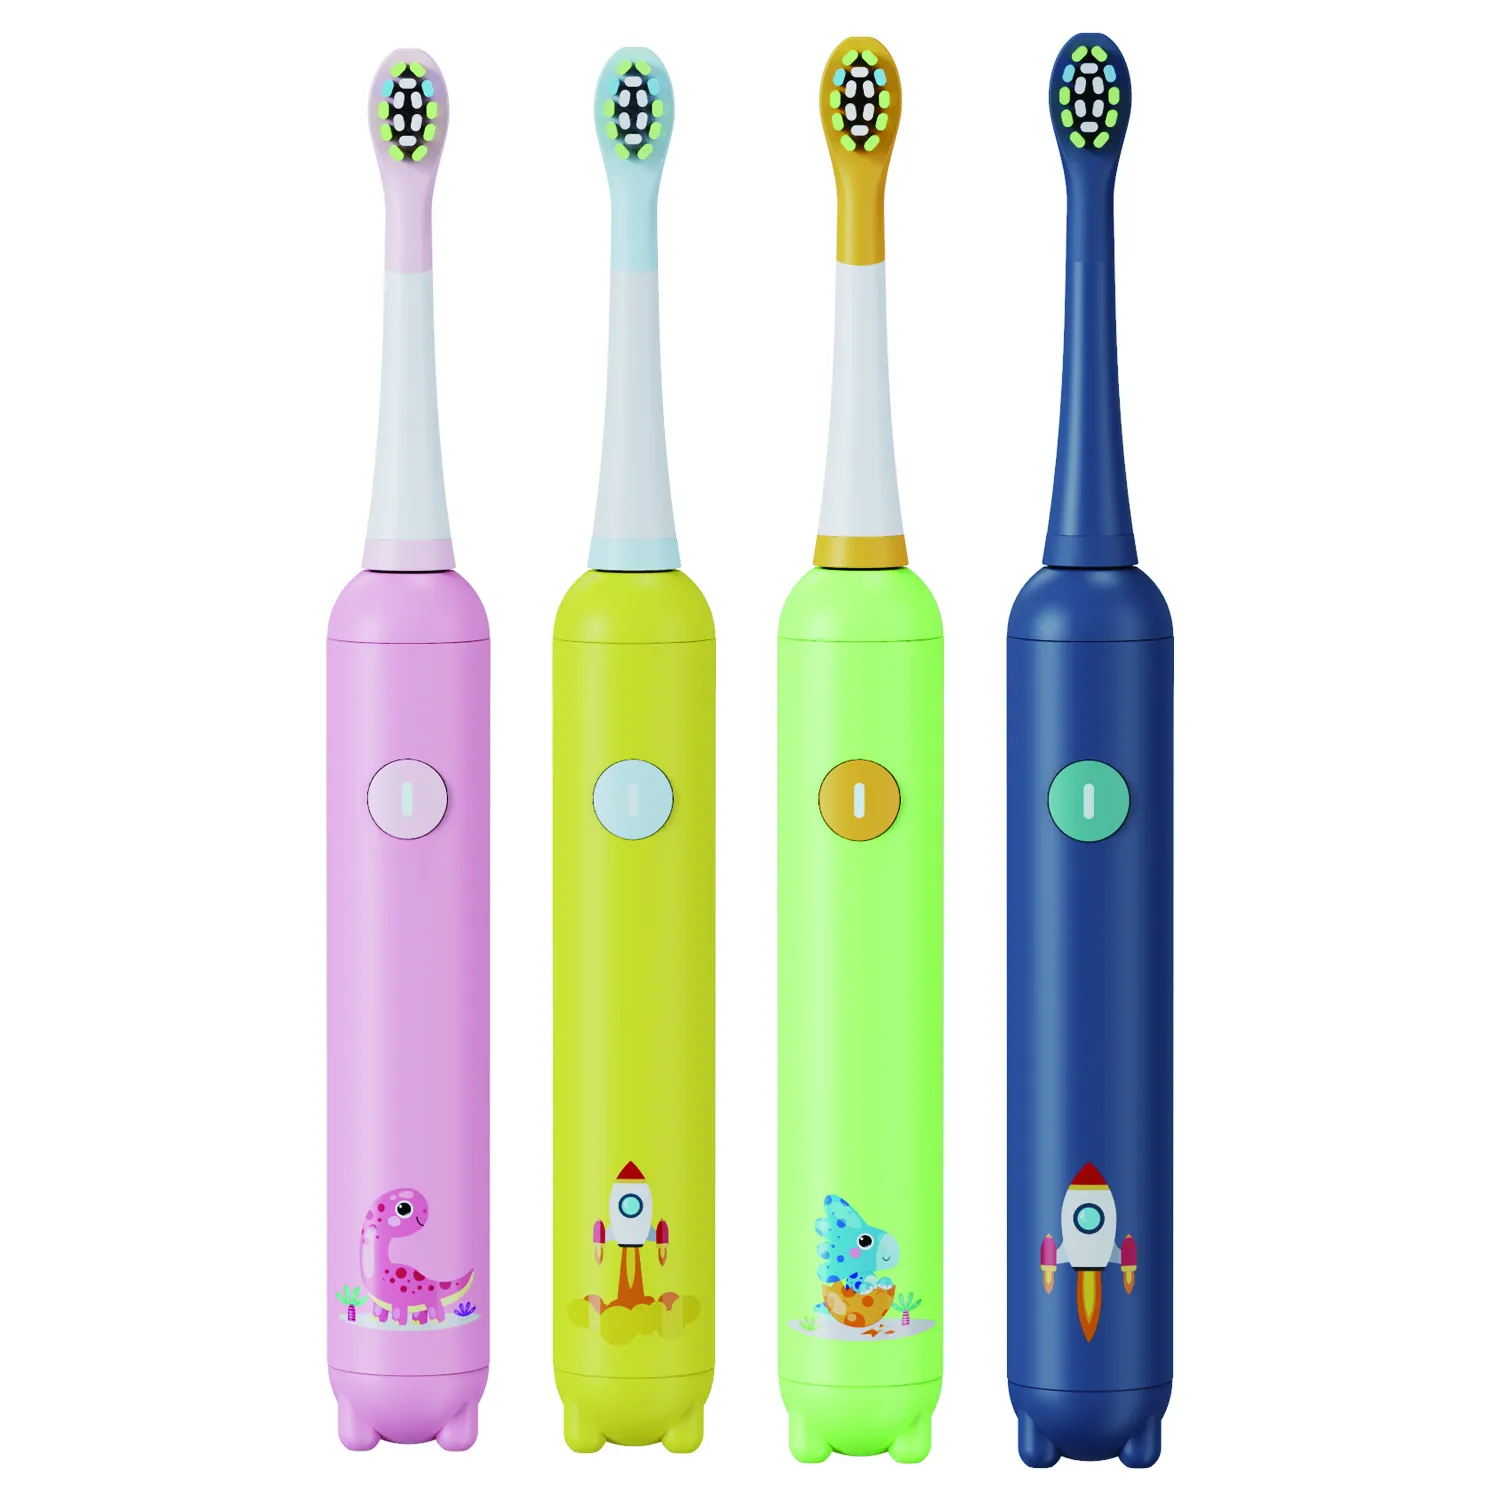 Eisler Aangepaste Kinderen Zachte Sonic Elektrische Tandenborstel Usb Opladen Ipx7 Thuis Elektrische Tandenborstel Voor Kinderen